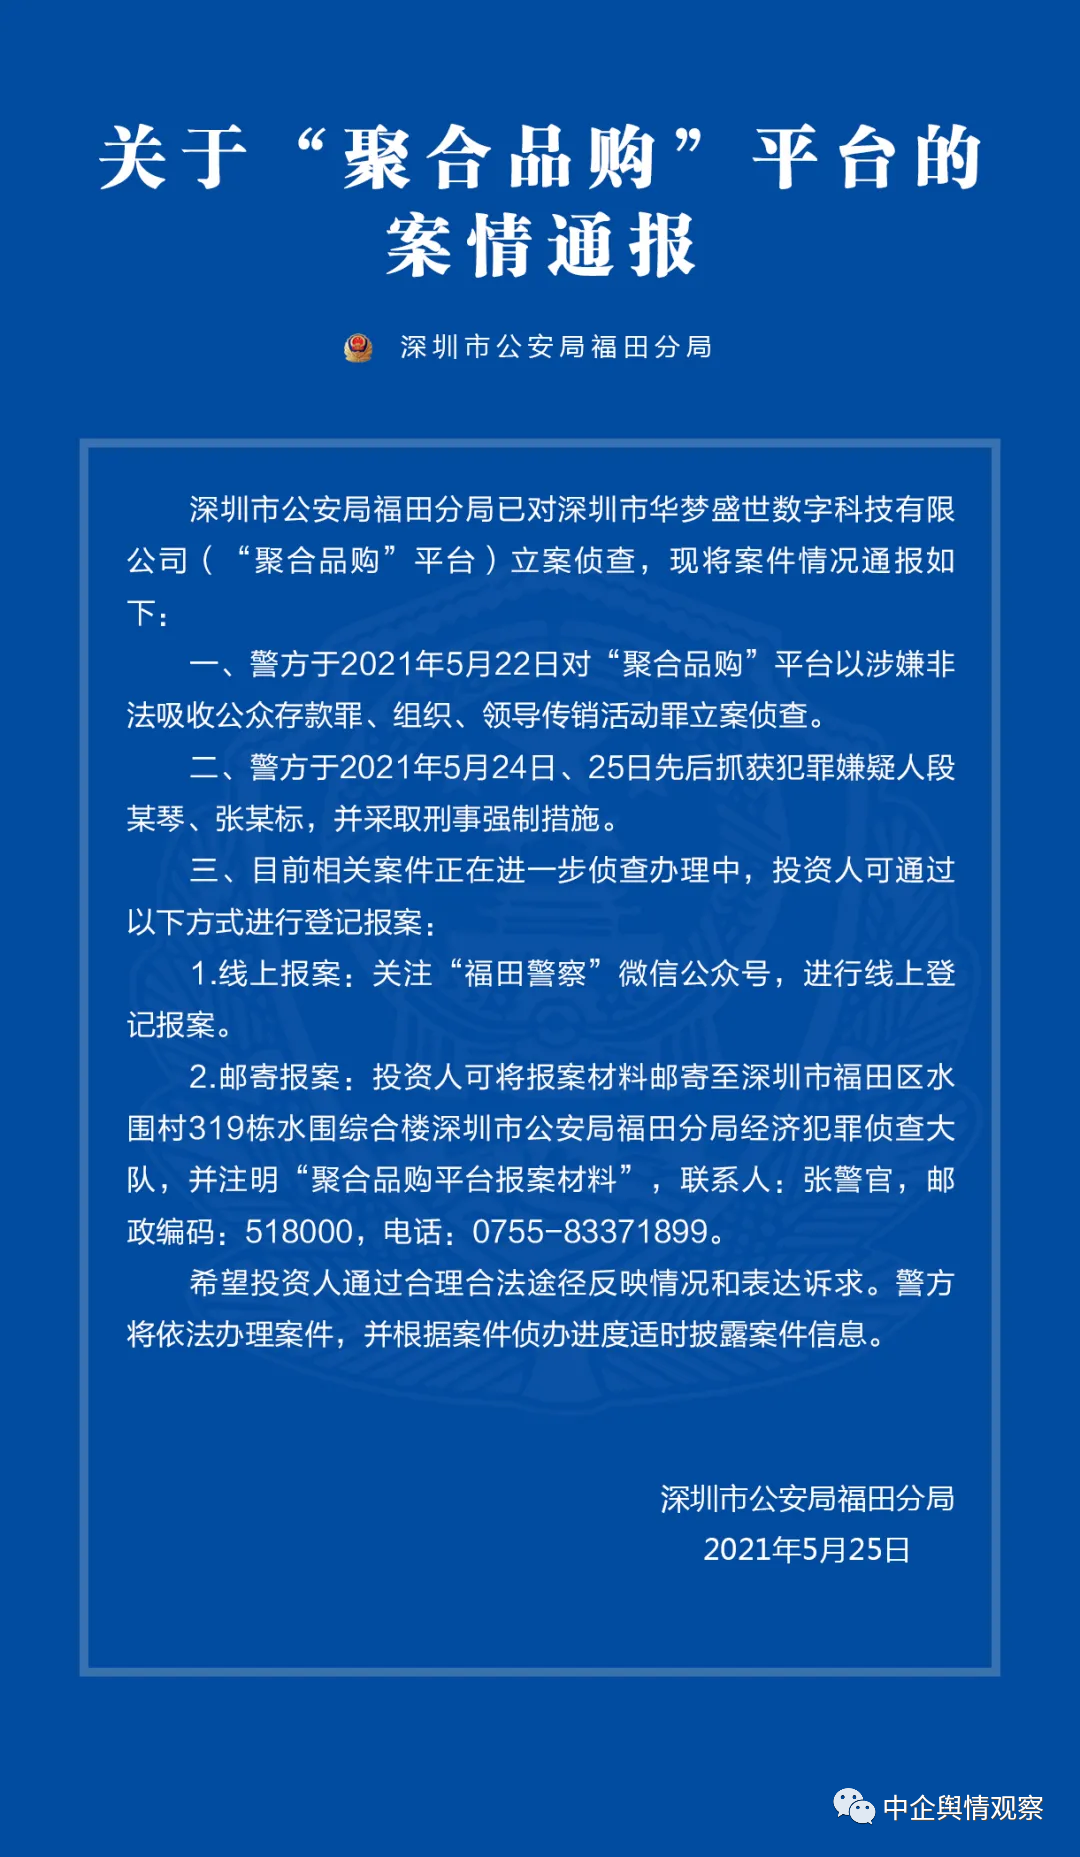 【打传】深圳警方对“聚合品购”平台立案侦查；福成六期一传销窝点被端了，当场查封！3人被带走